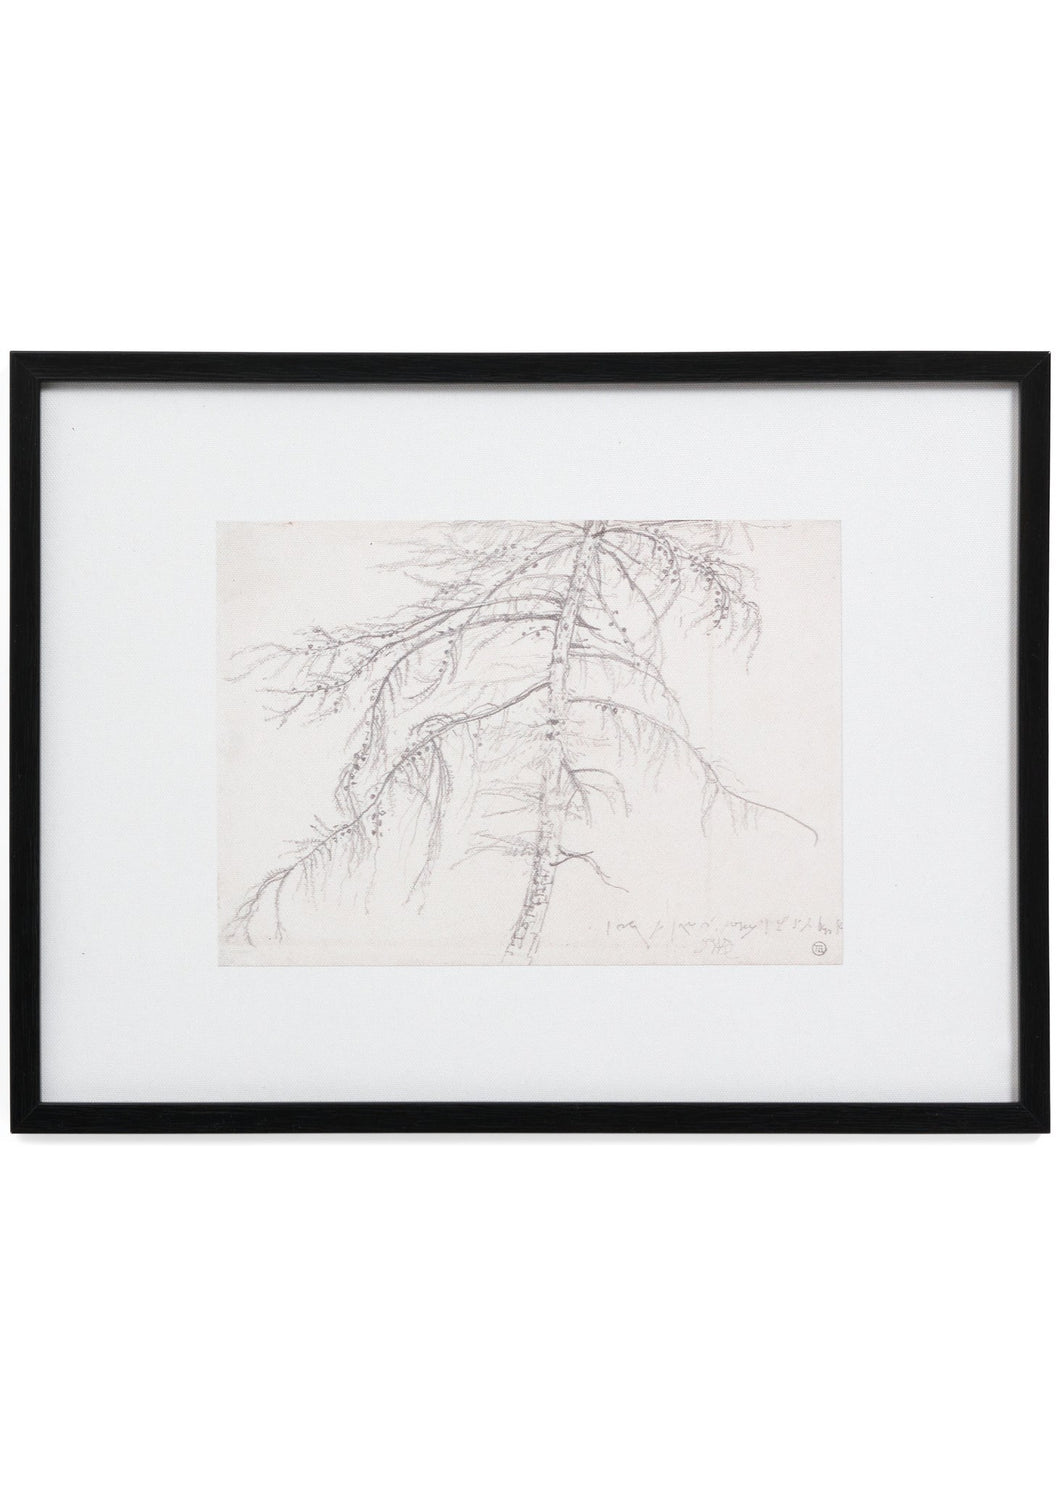 Framed Art Tree Sketch